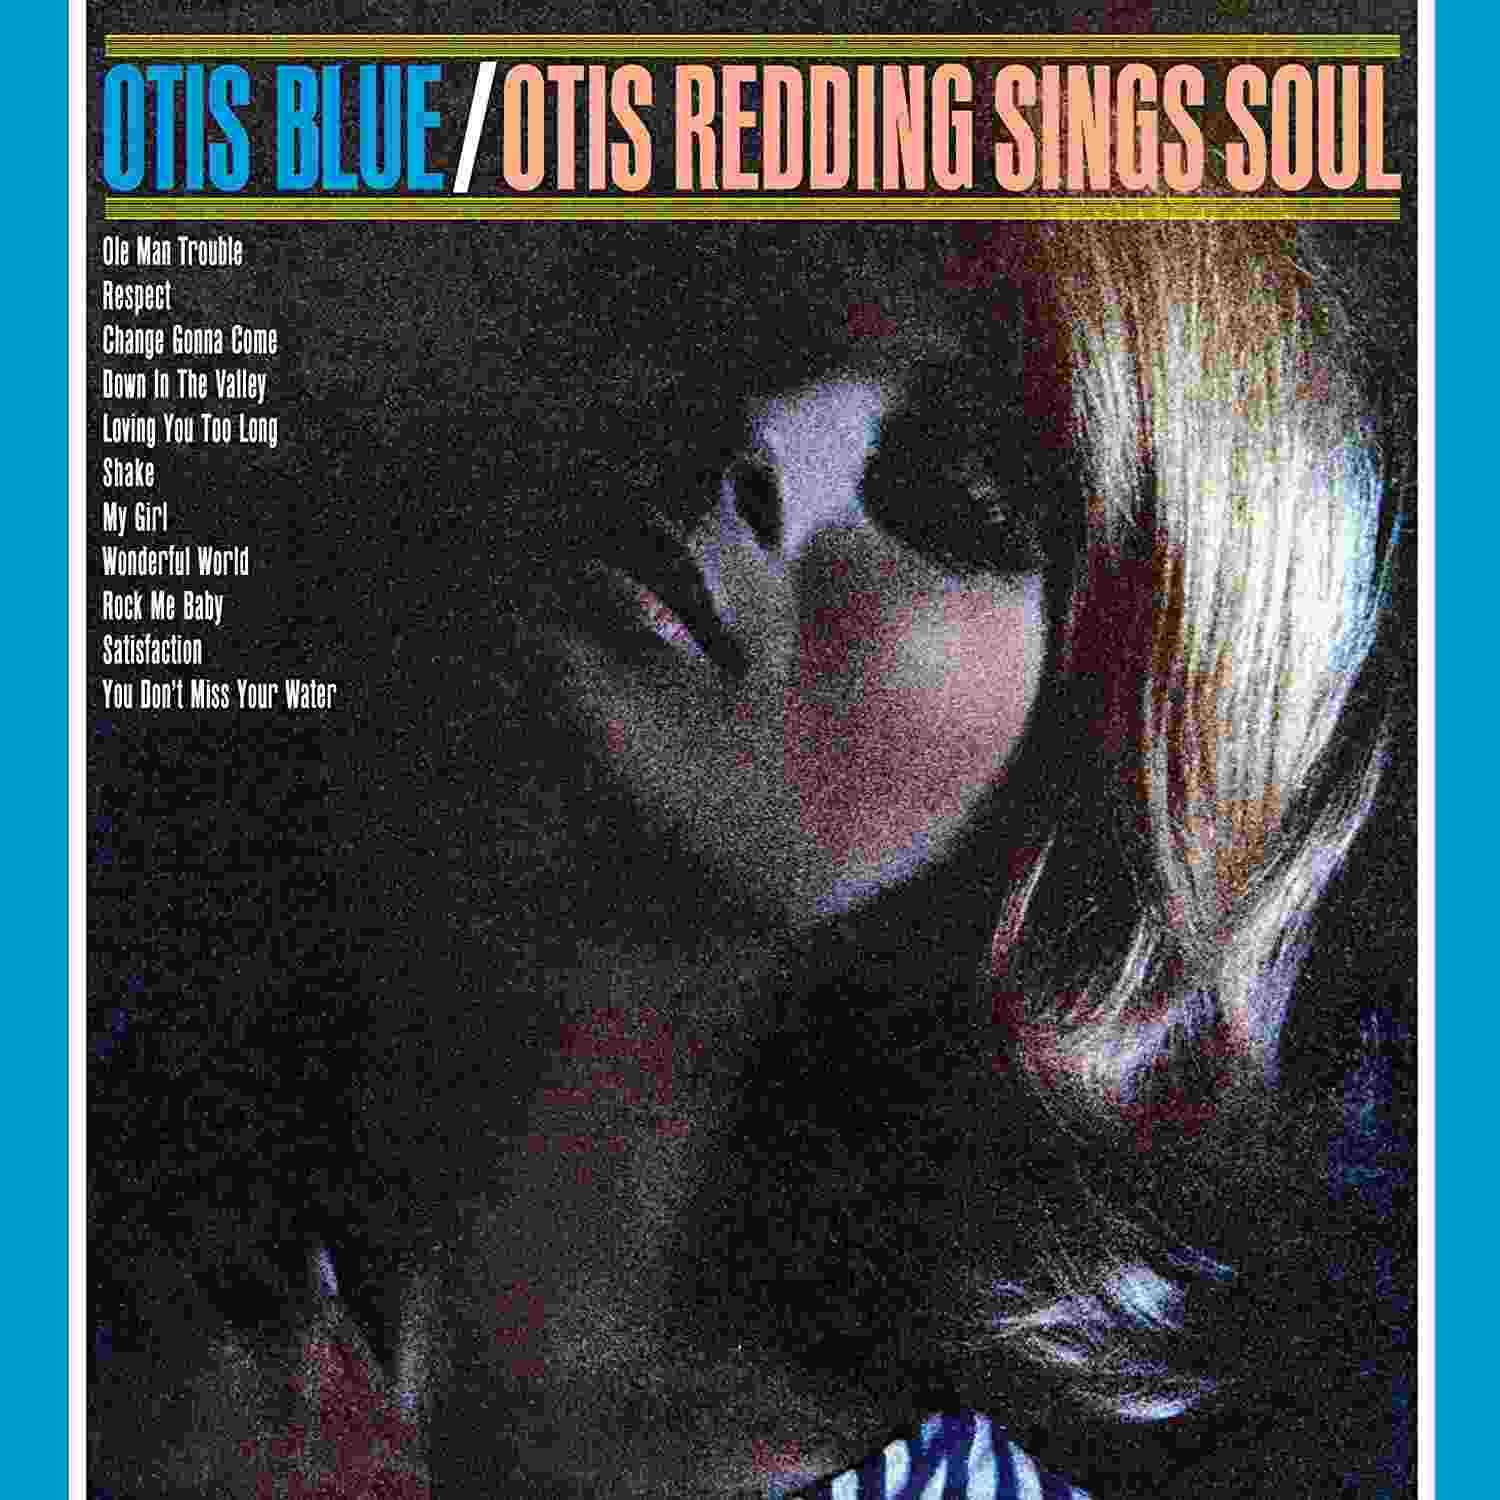 OTIS BLUE / OTIS REDDING SINGS SOUL - VINILO